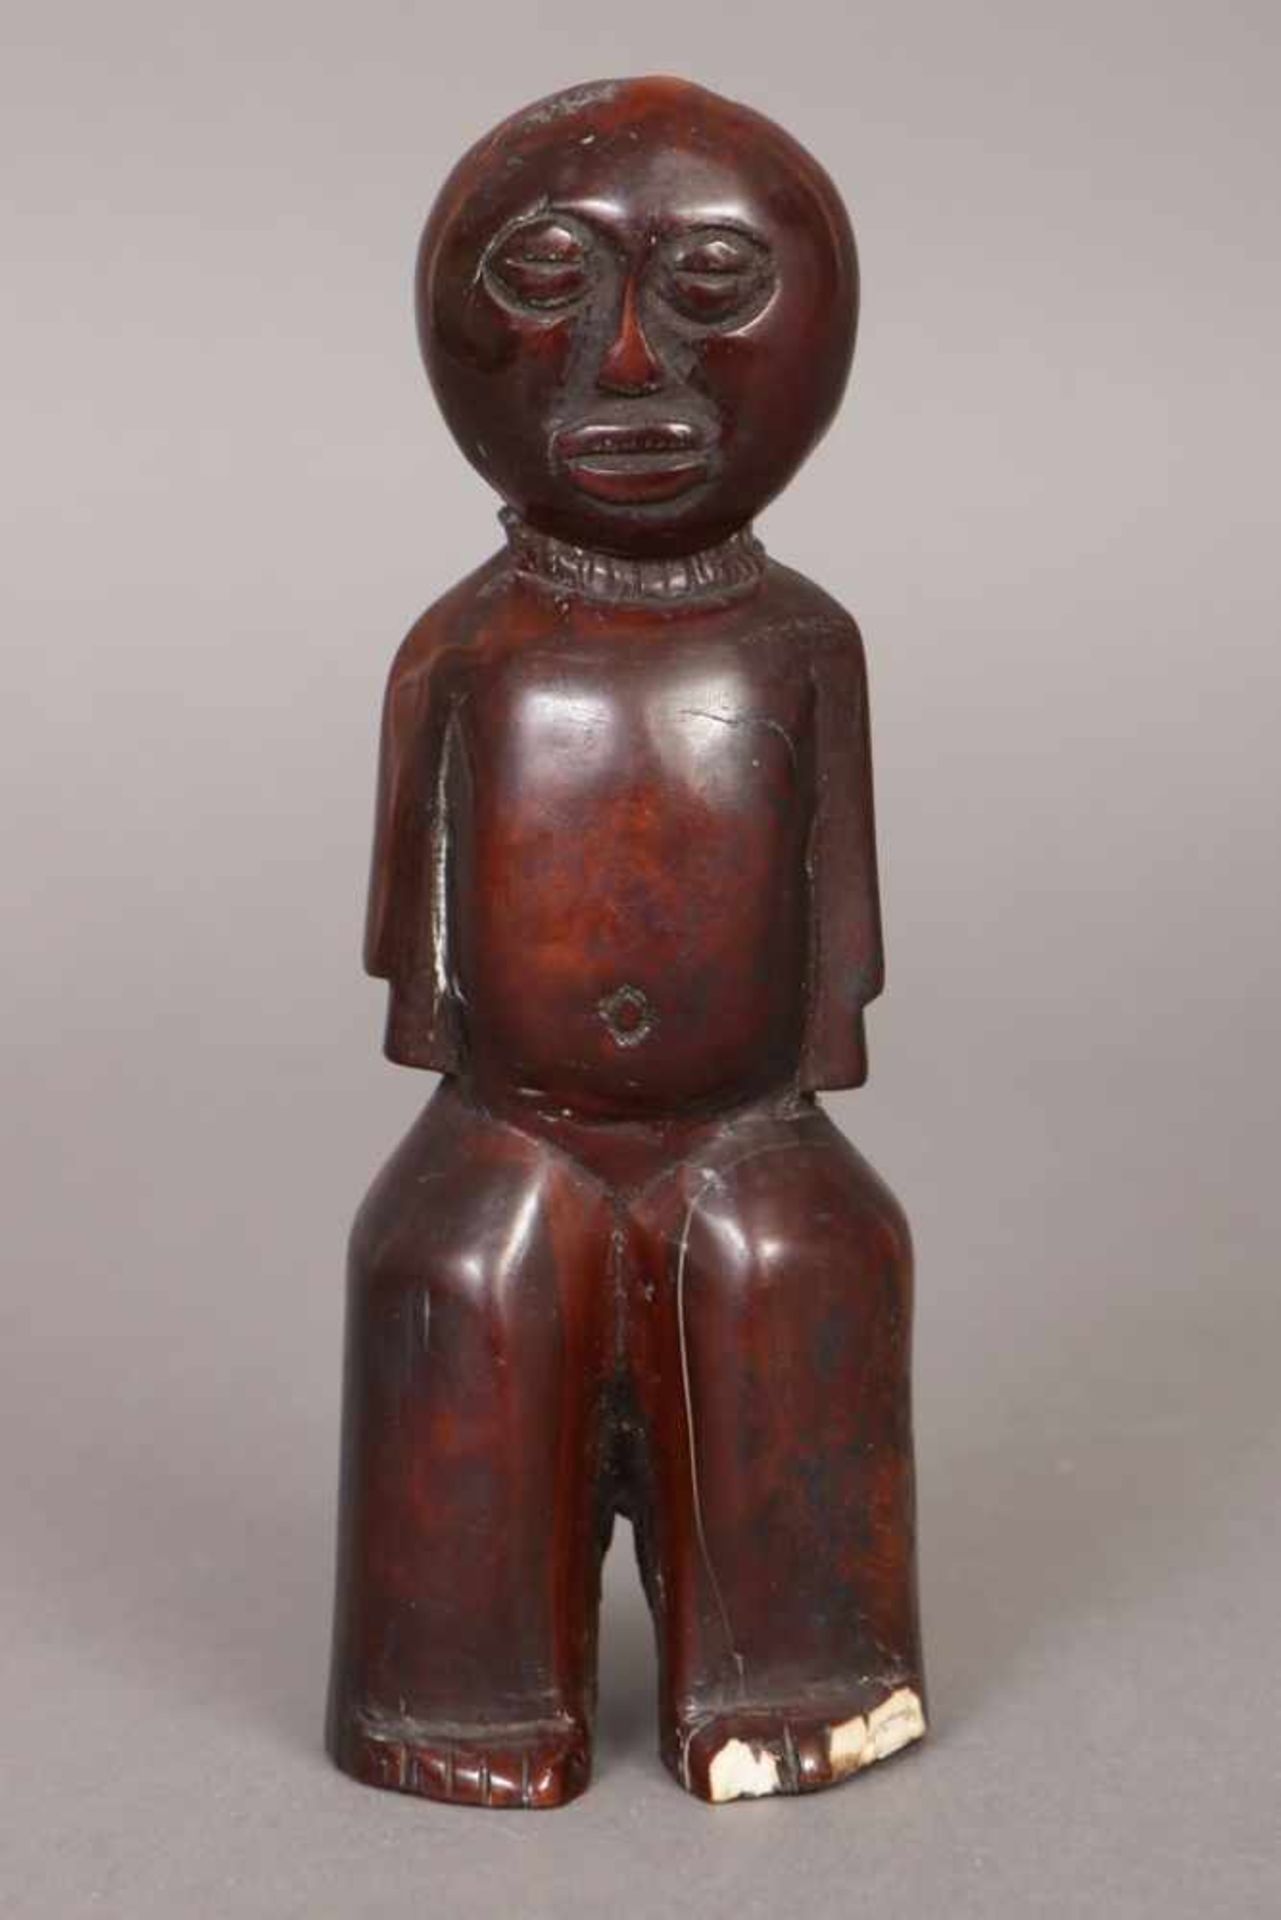 Afrikanische Ritualfigur Elfenbein, dunkel patiniert, Westafrika, wohl 1. Hälfte 20. Jhdt., stehende